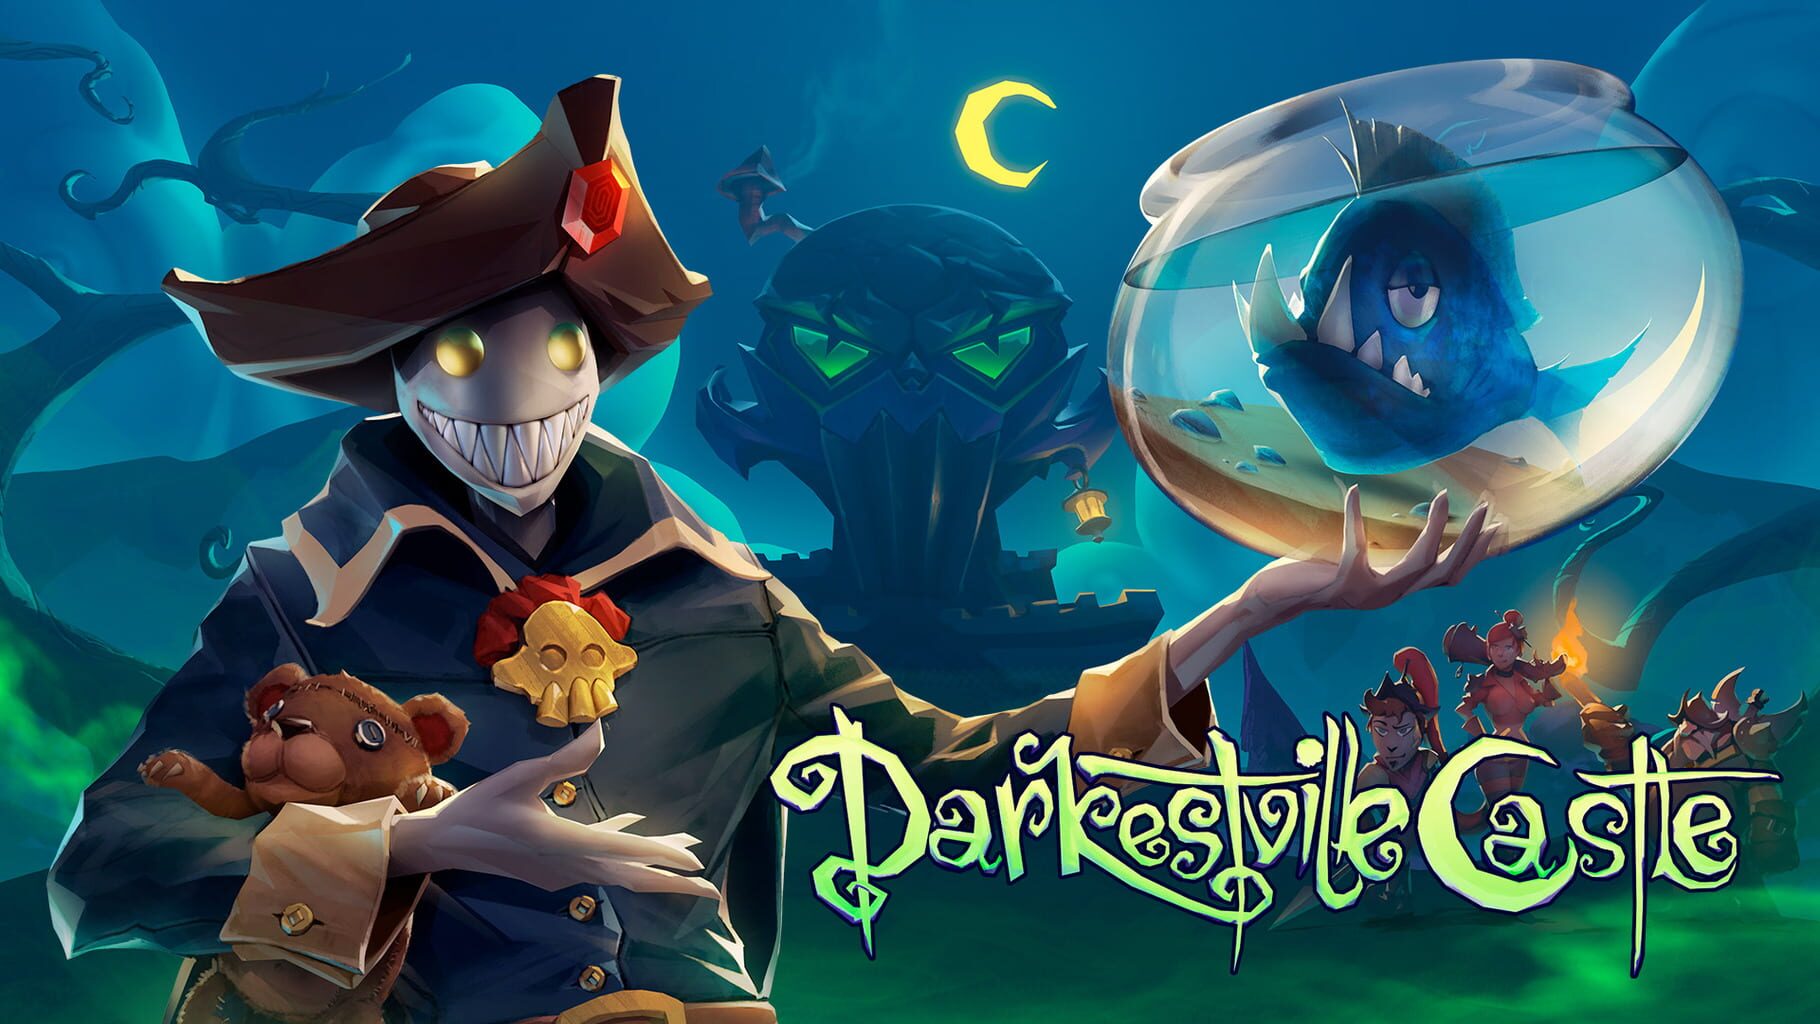 Darkestville Castle artwork